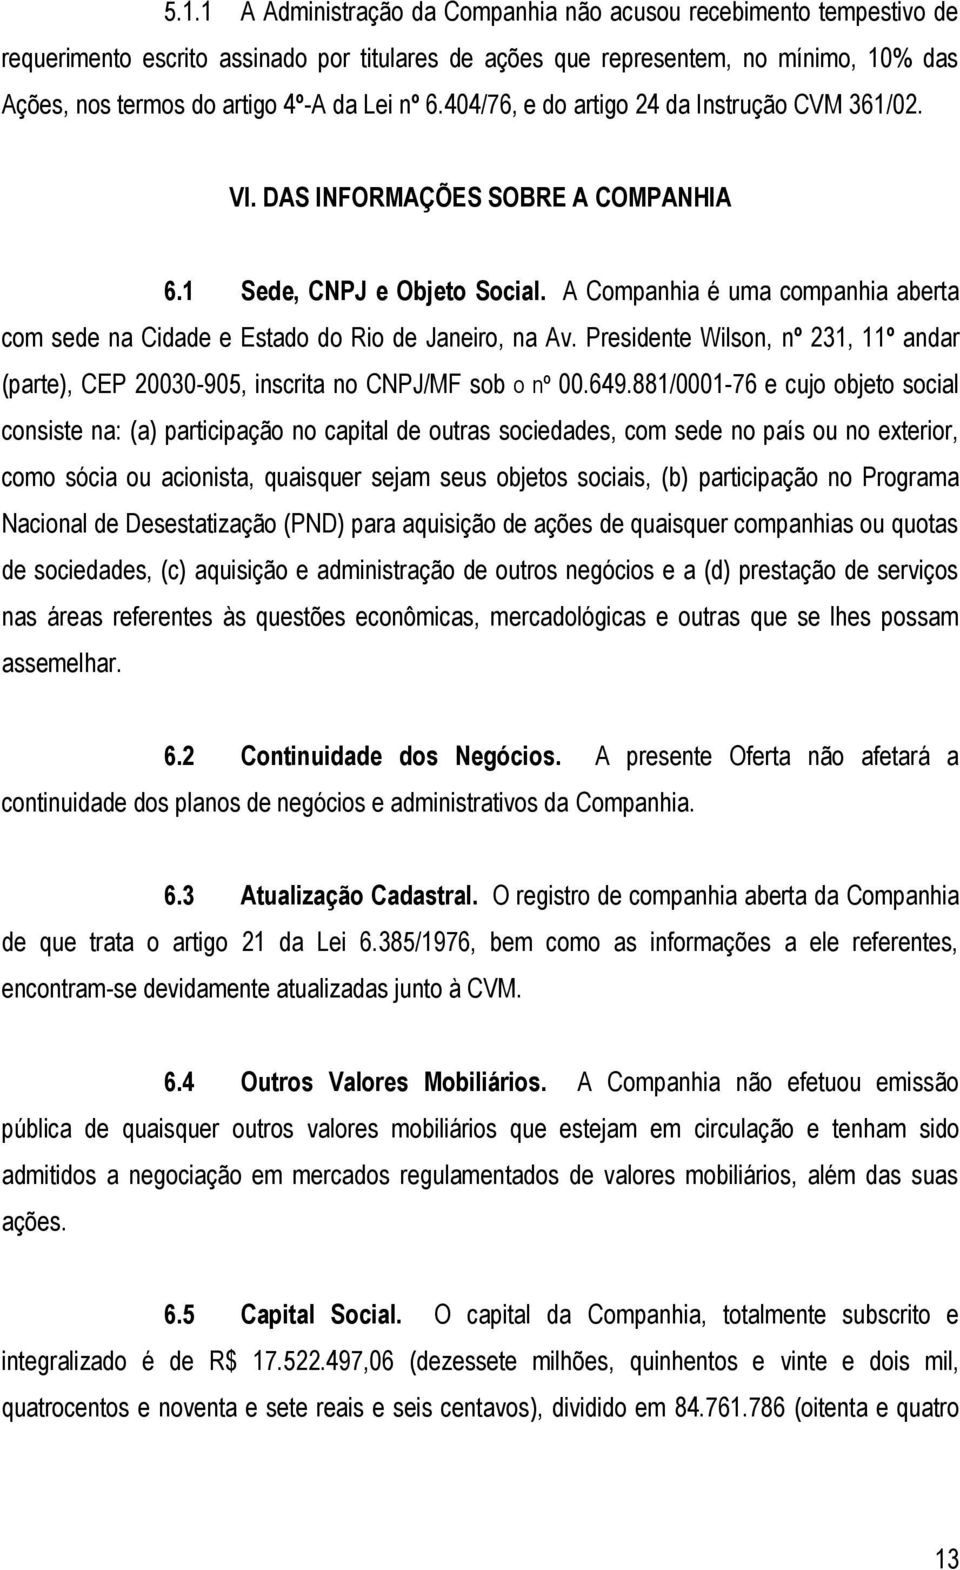 A Companhia é uma companhia aberta com sede na Cidade e Estado do Rio de Janeiro, na Av. Presidente Wilson, nº 231, 11º andar (parte), CEP 20030-905, inscrita no CNPJ/MF sob o nº 00.649.